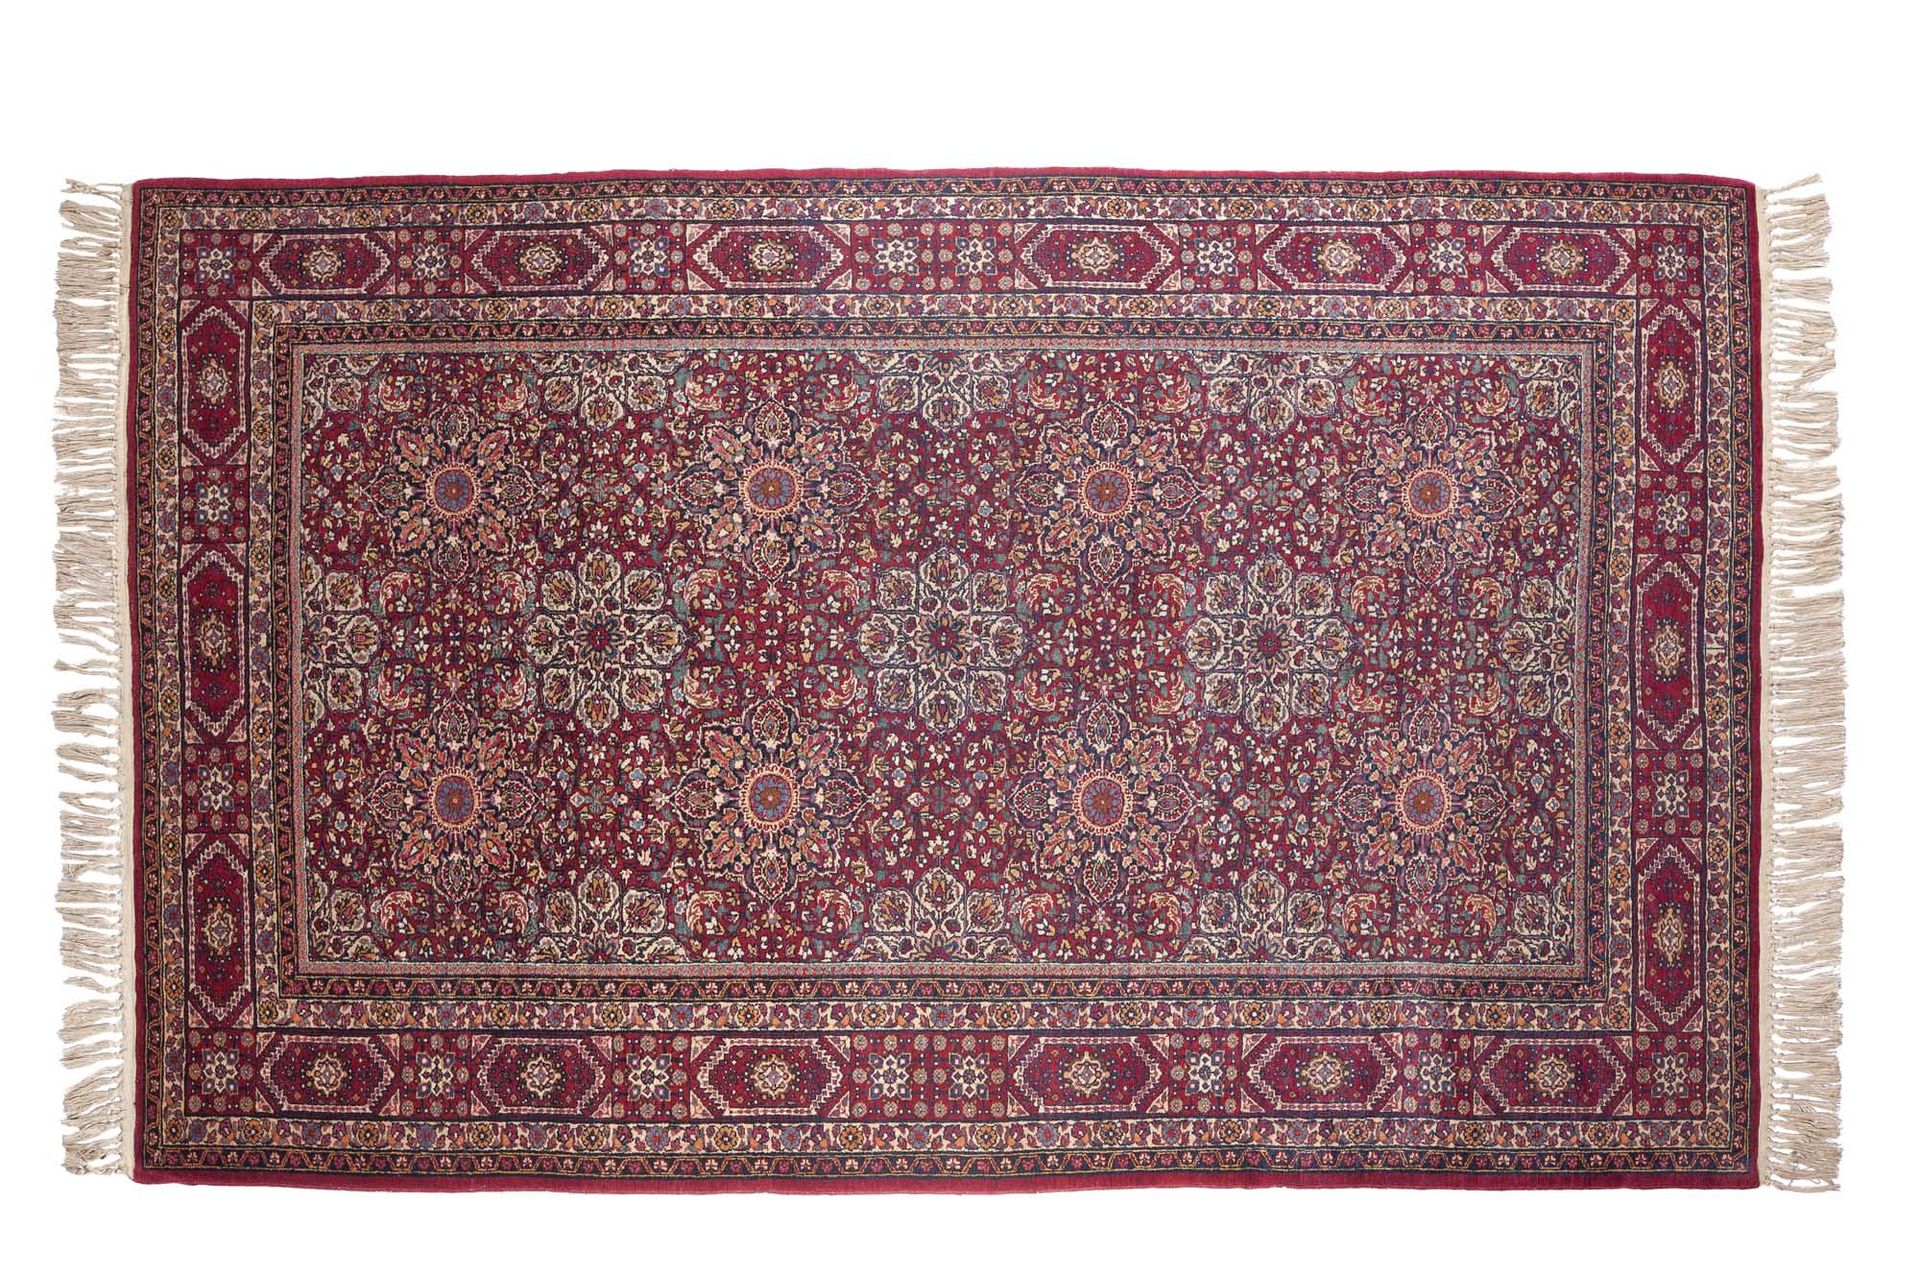 Null 德黑兰（波斯）地毯，19世纪末

尺寸：200 x 140厘米

技术特点 : 羊毛丝绒，棉质基础。

一片 "万花丛中过 "的紫薇花田支撑着华丽的星&hellip;